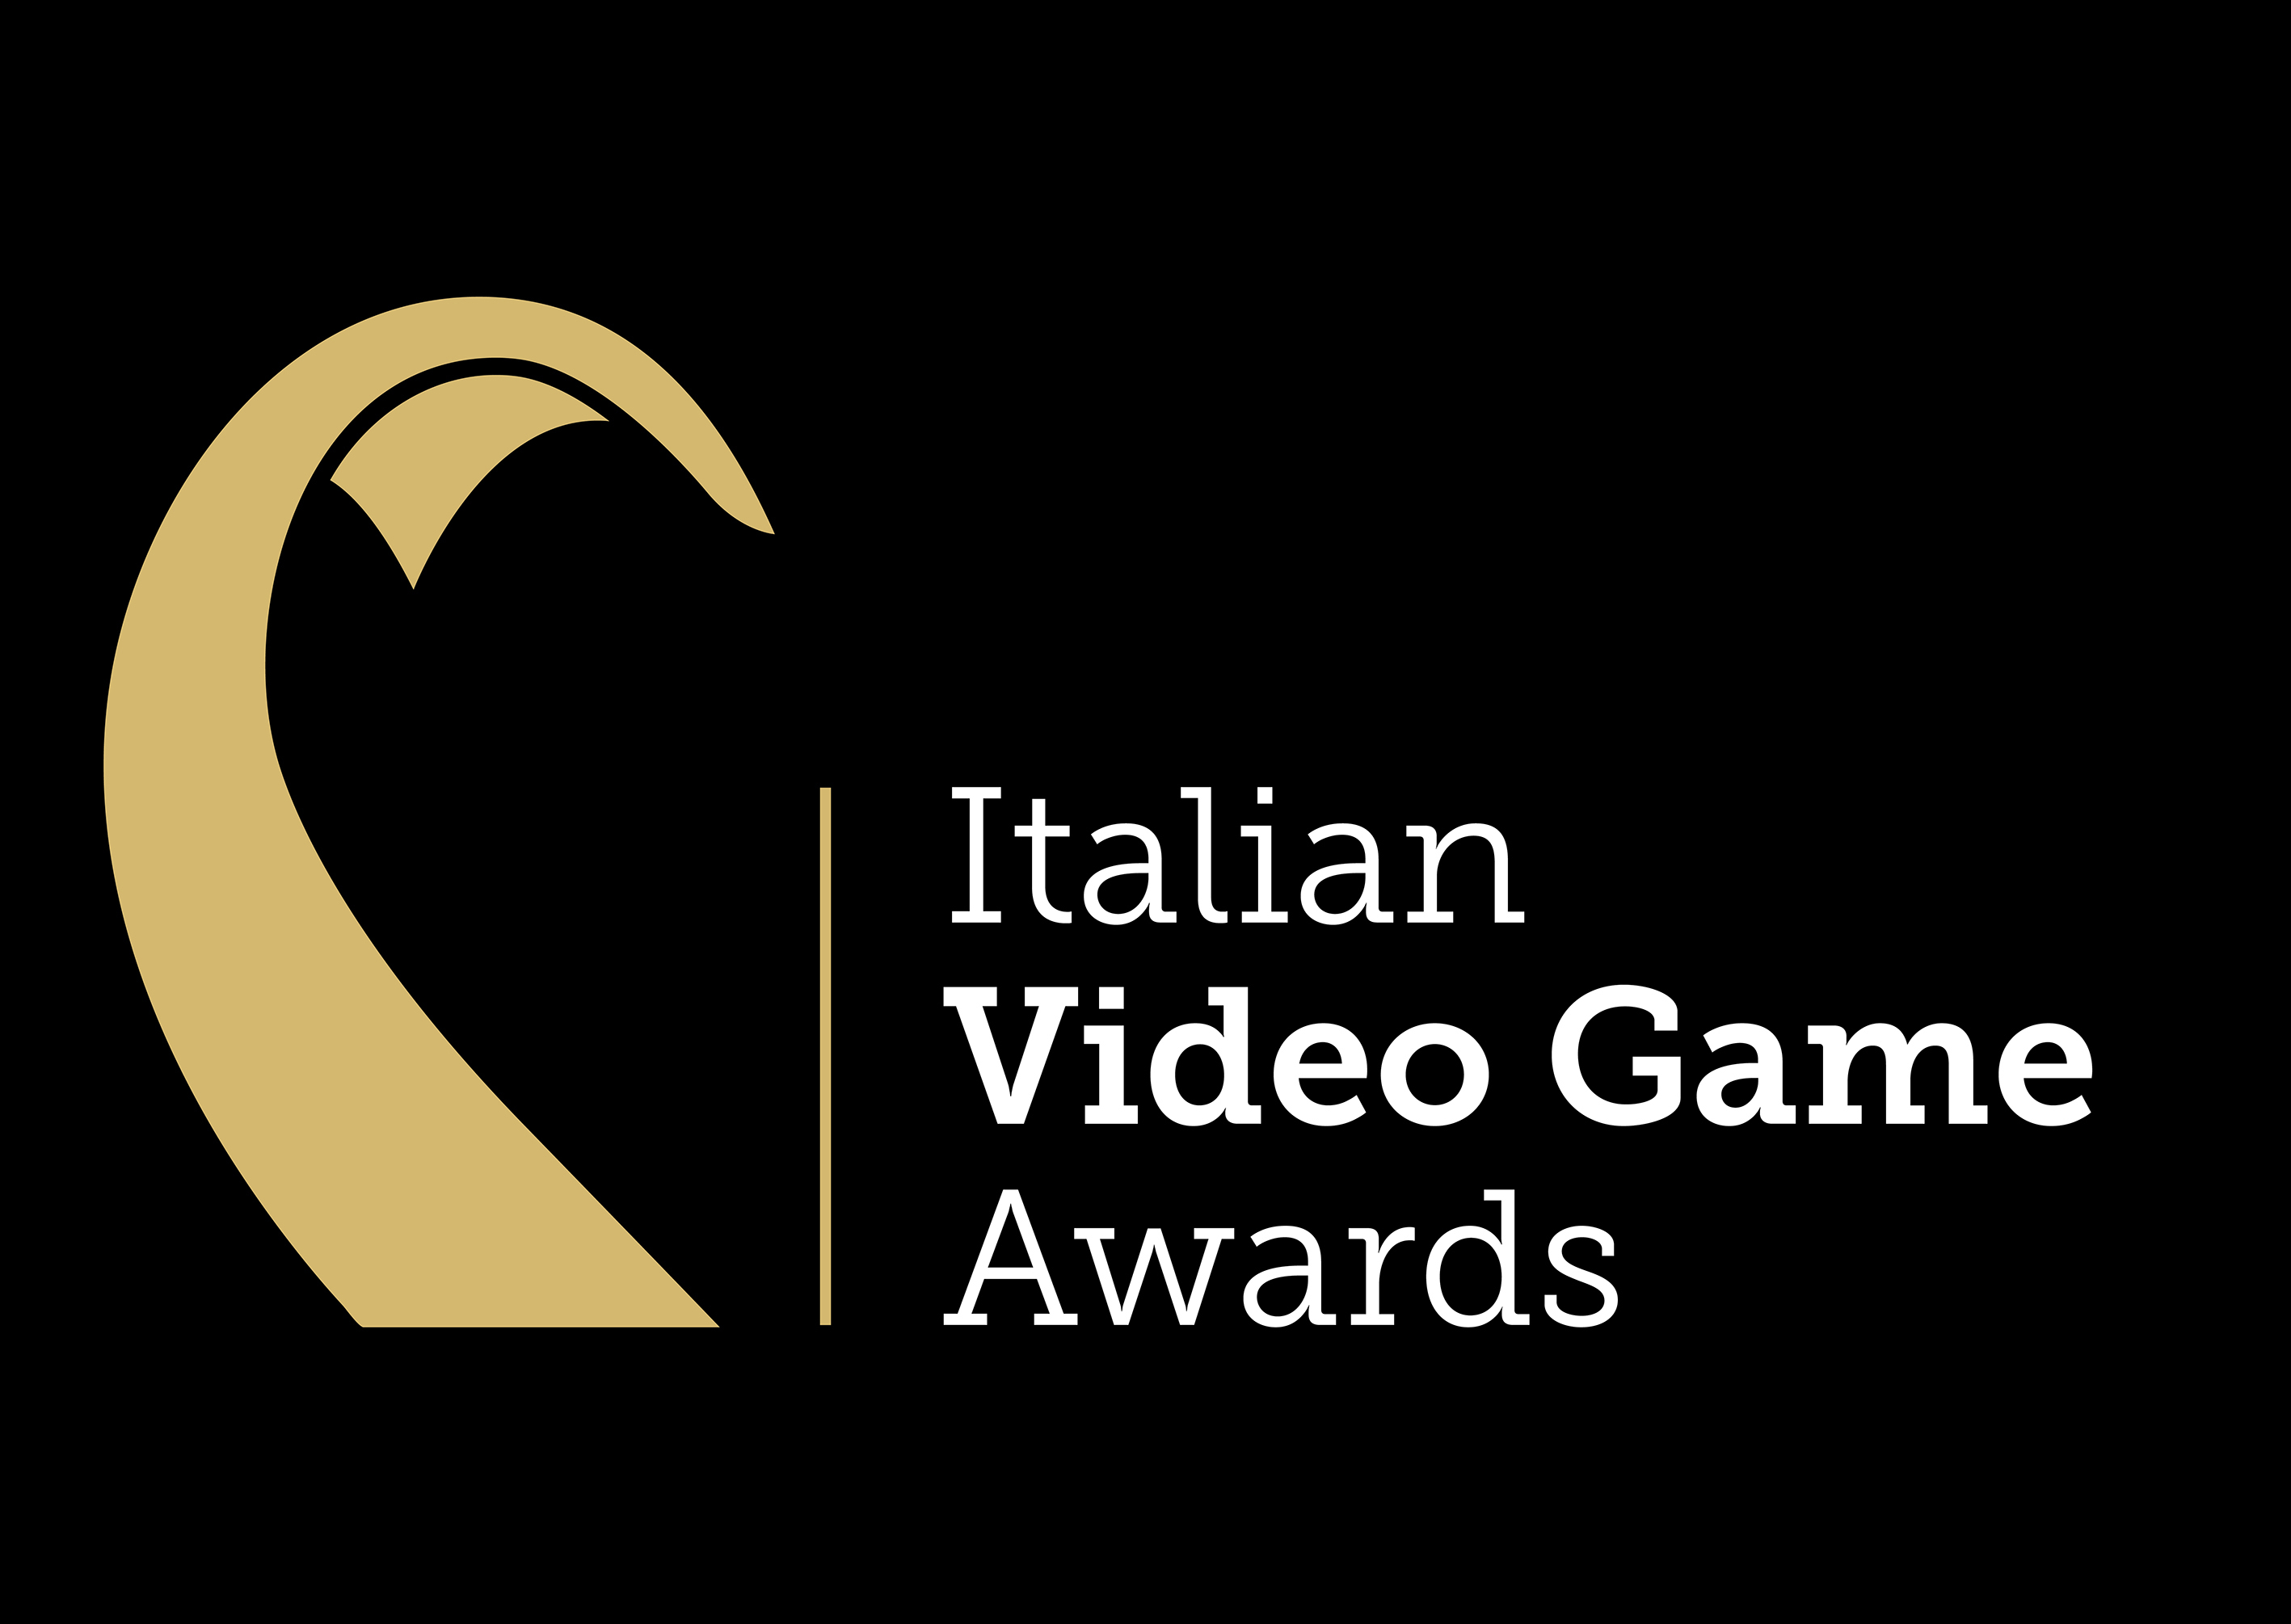 Italian Video Game Award